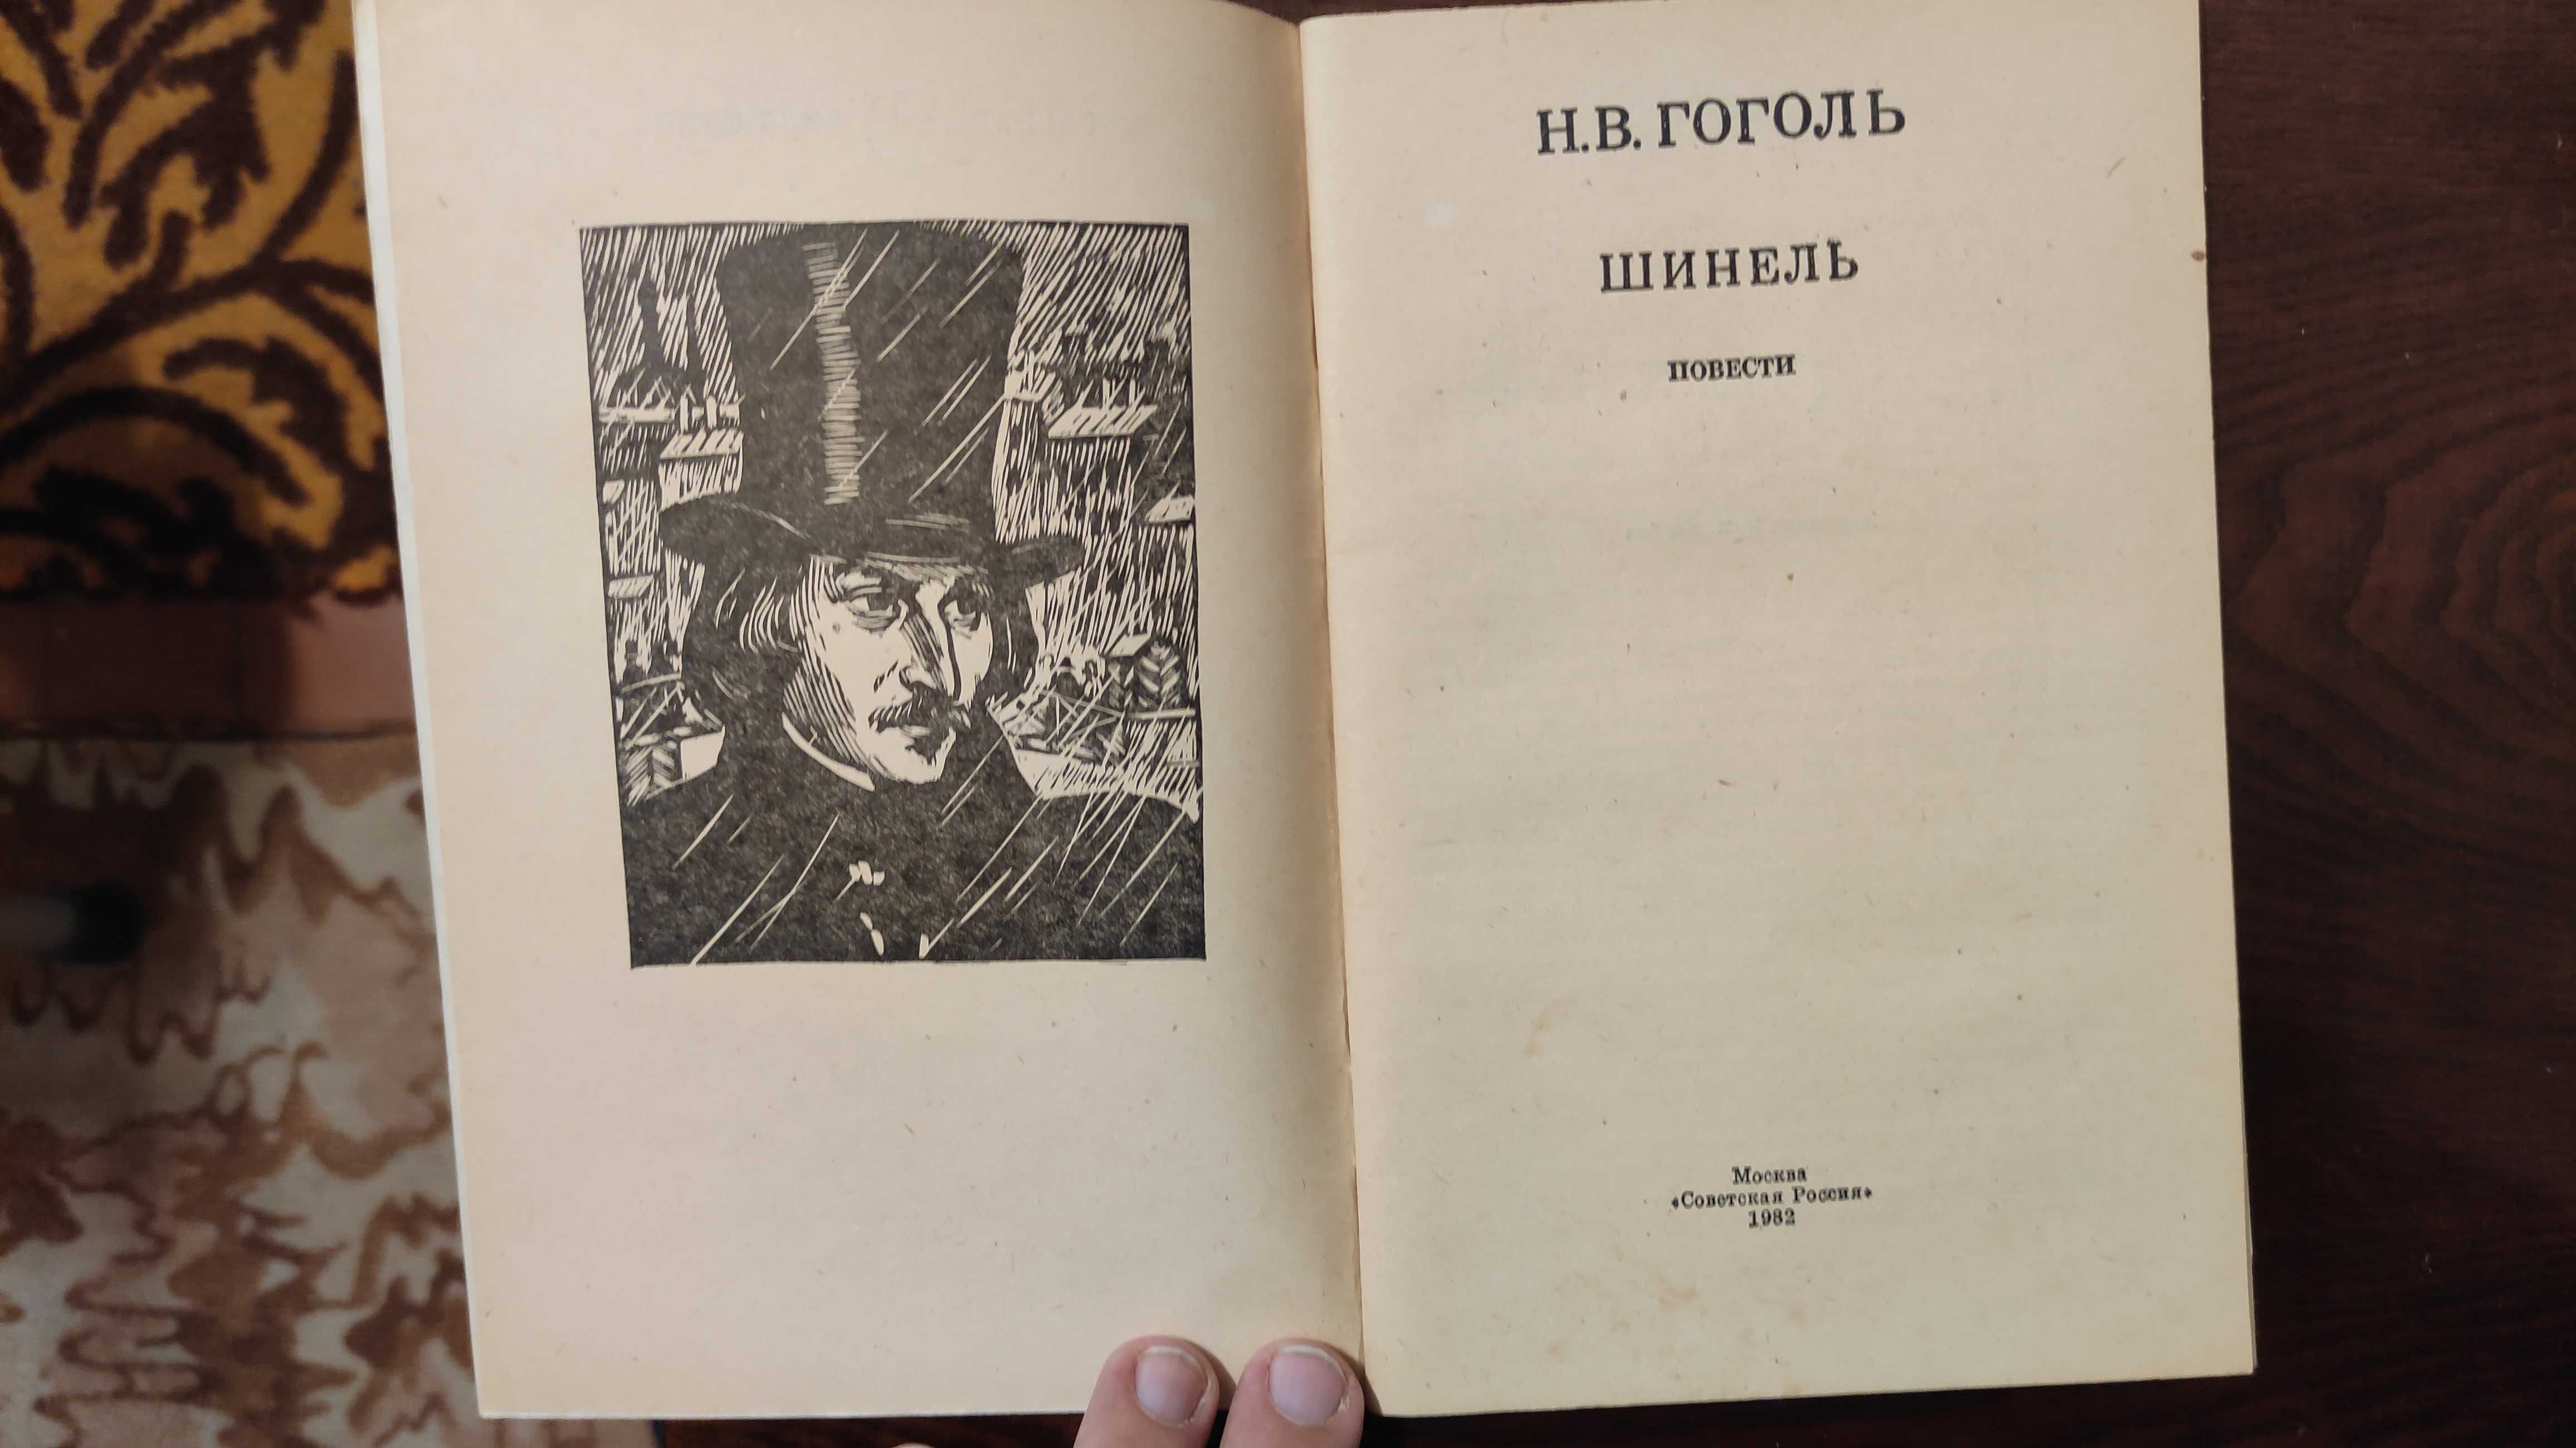 Книга Н. В. Гоголя  "Шинель"  1982 г.